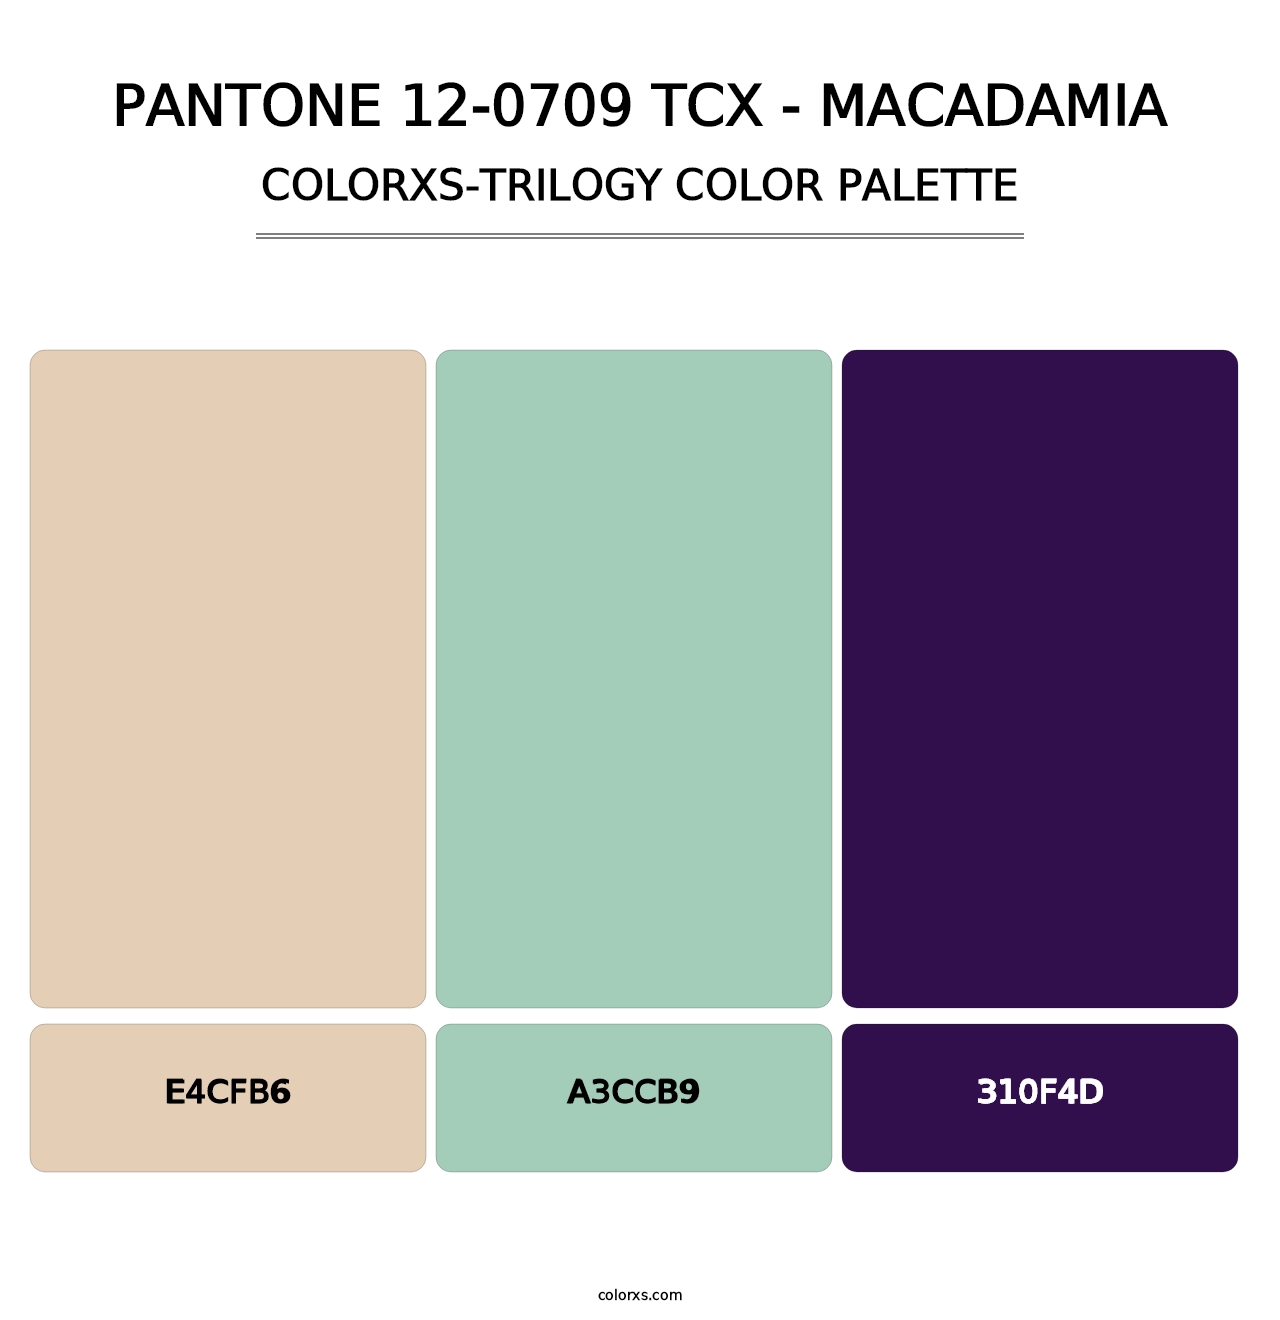 PANTONE 12-0709 TCX - Macadamia - Colorxs Trilogy Palette